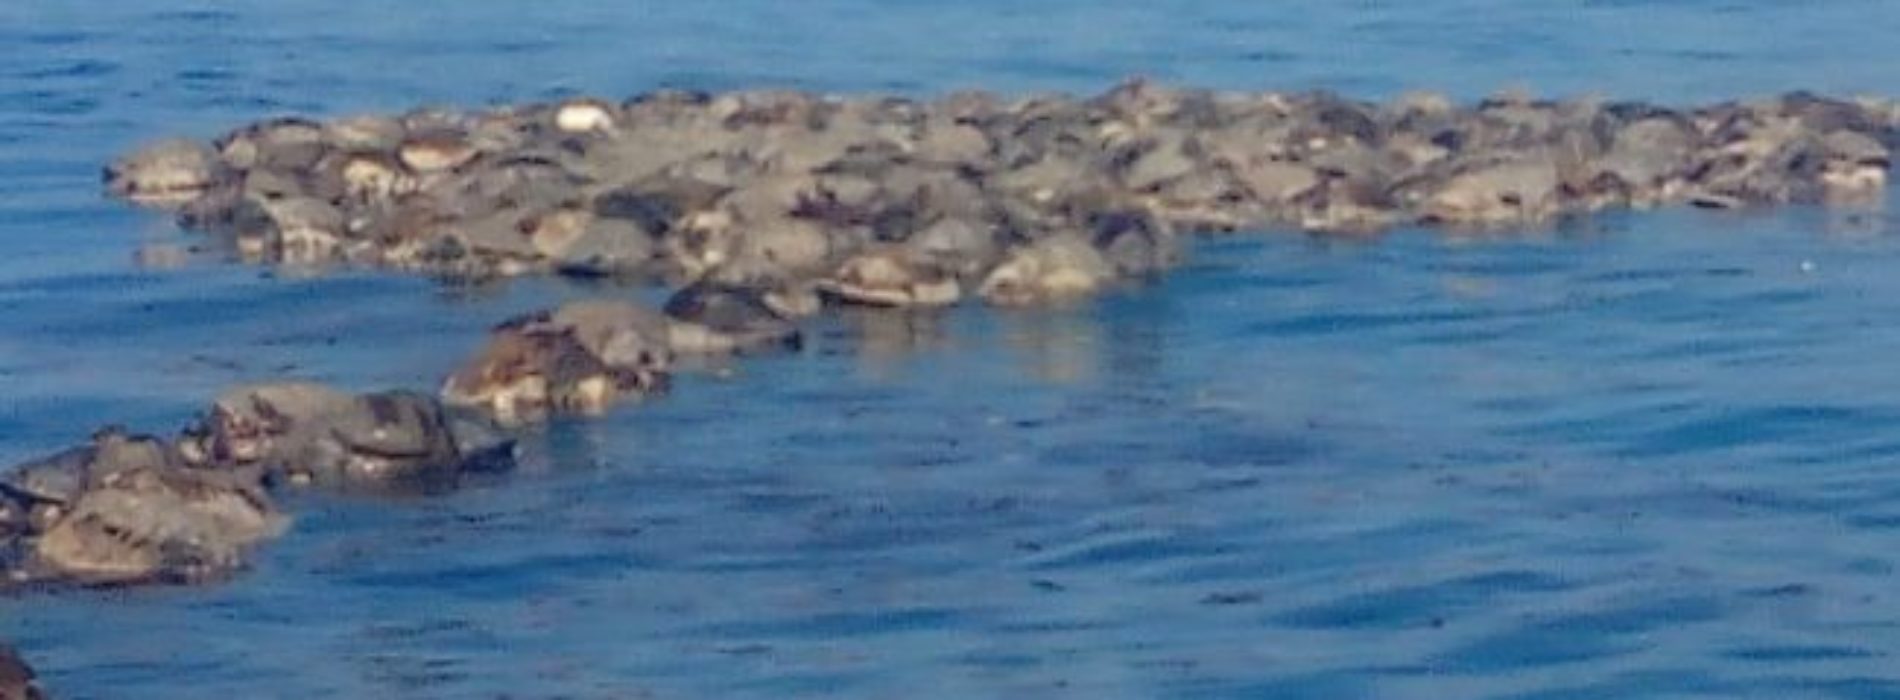 Coadyuva Semaedeso en investigación de tortugas atrapadas en
playas de Colotepec